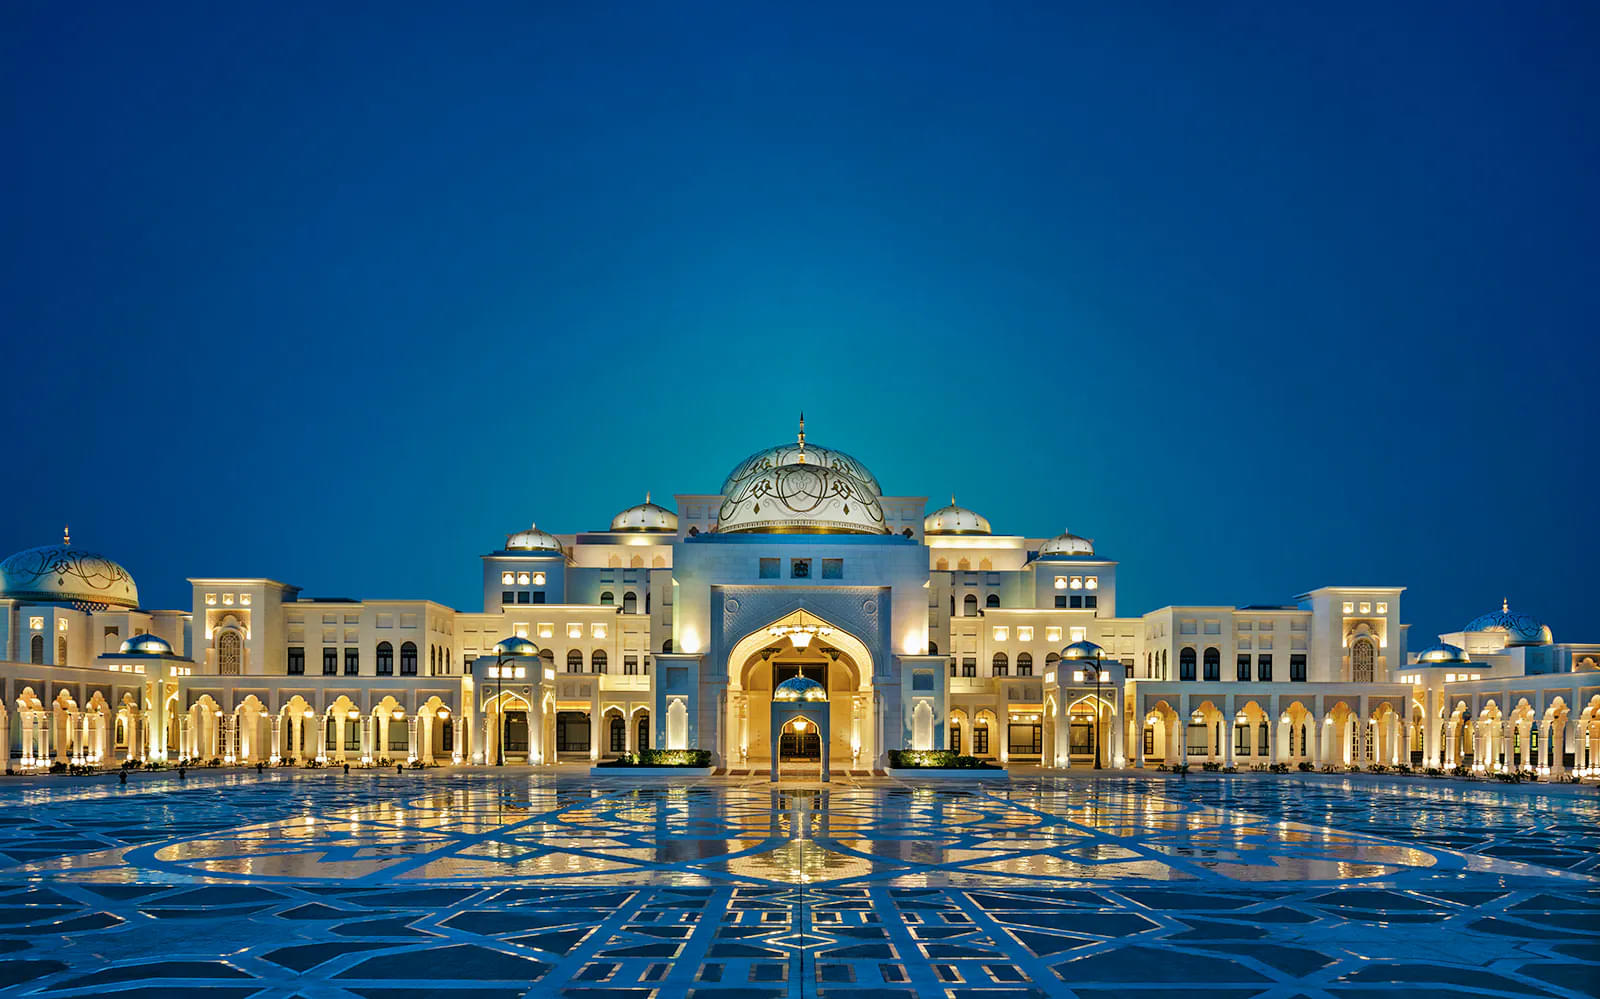 Qasr Al Watan - The Presidential Palace of Abu Dhabi